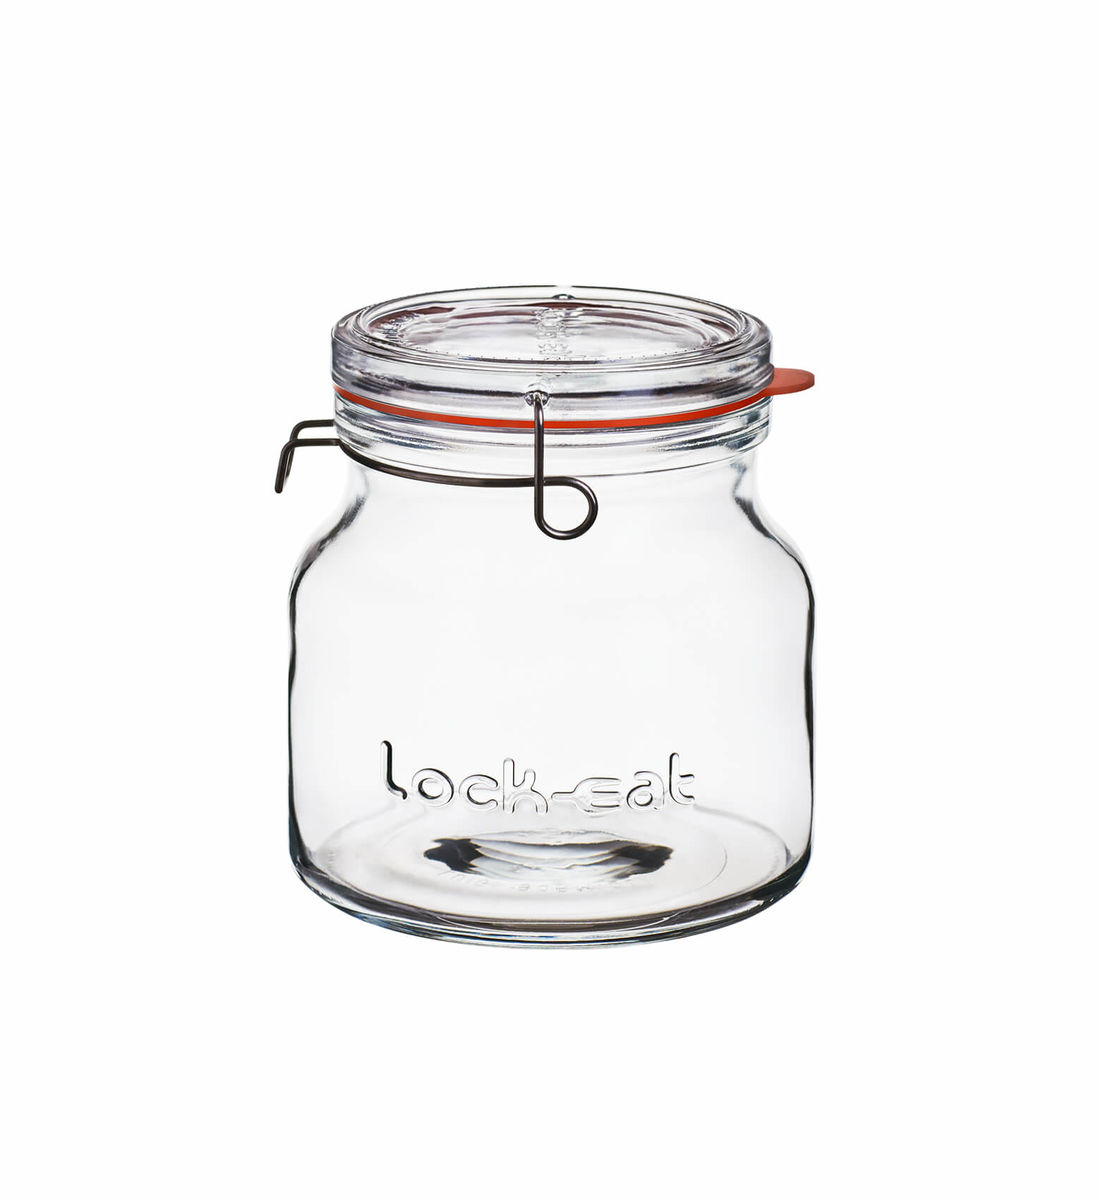 Image of Lock Eat Einmachglas XL 1.5l bei nettoshop.ch